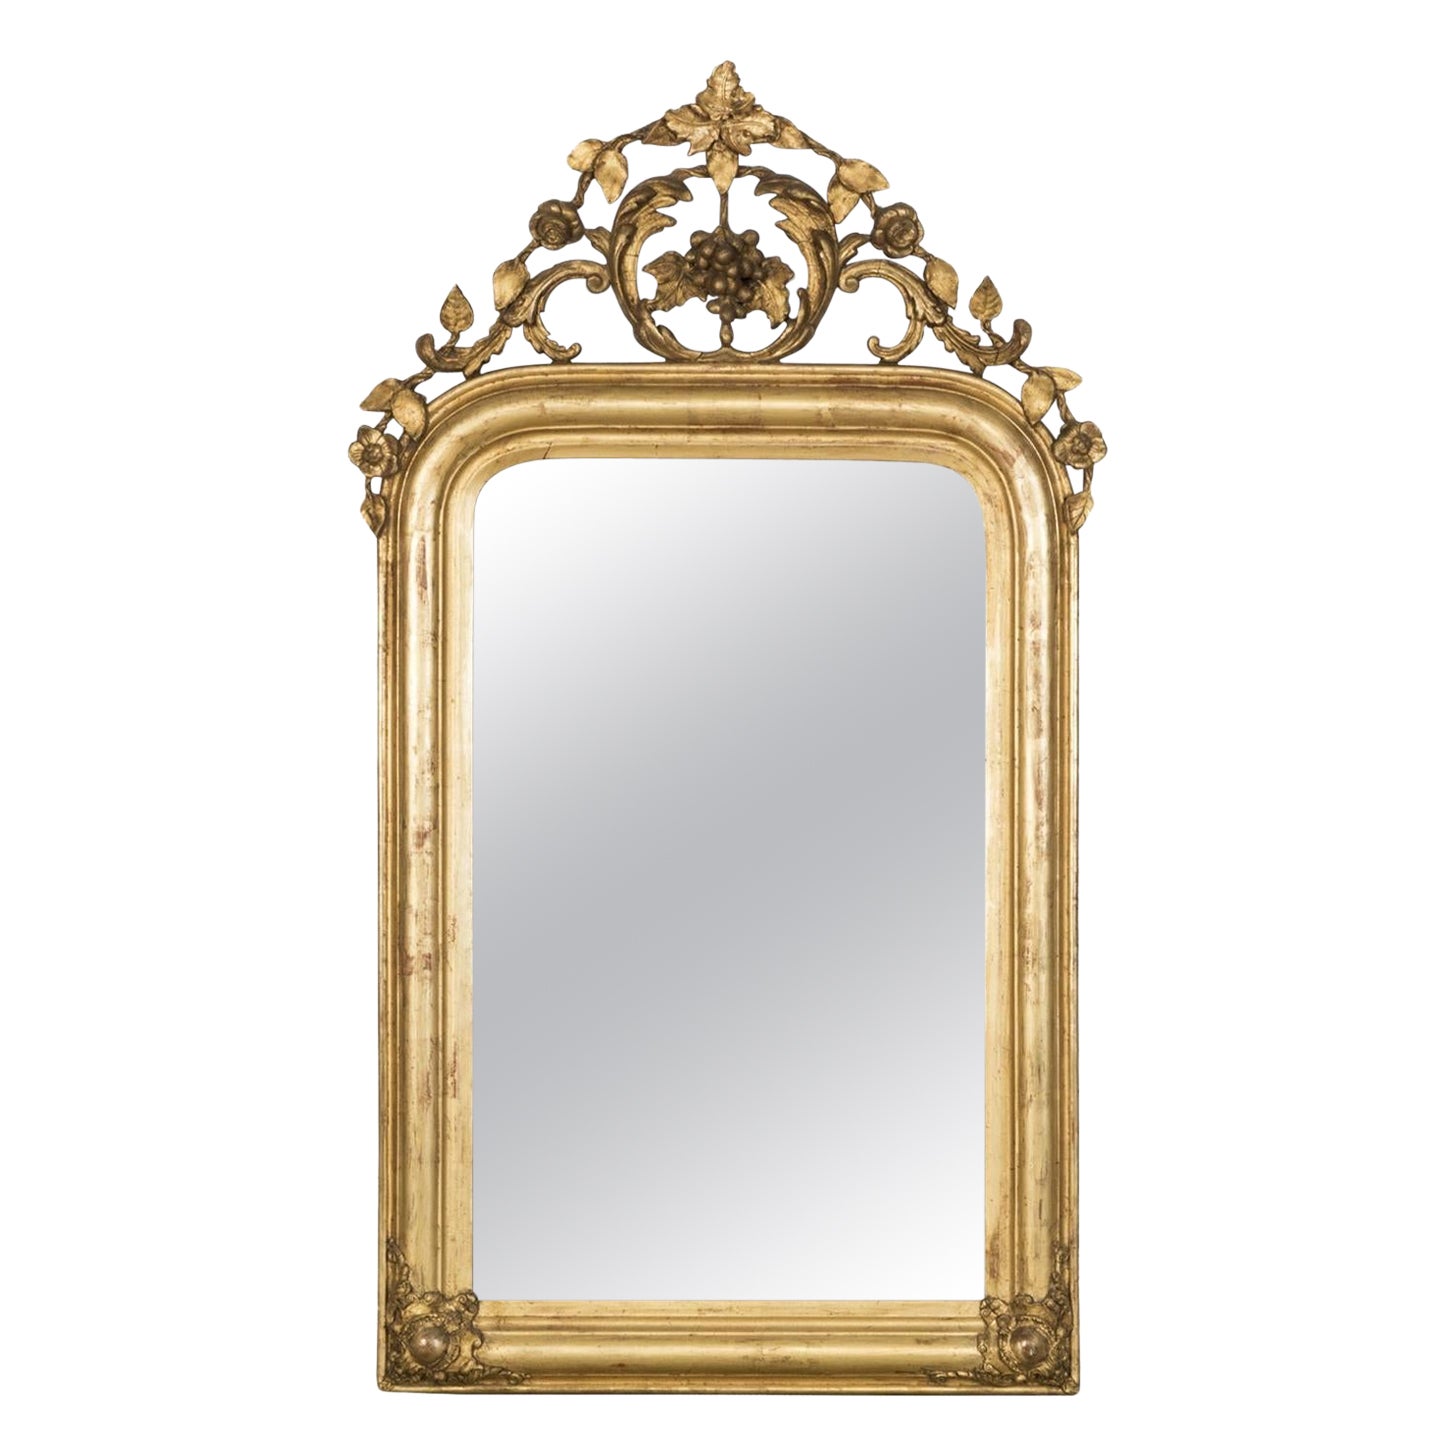 Antique French 19th C Louis Philippe Mirror with Foliage and Grape Motifs (Miroir ancien français du 19ème siècle avec des motifs de feuillage et de raisin) en vente